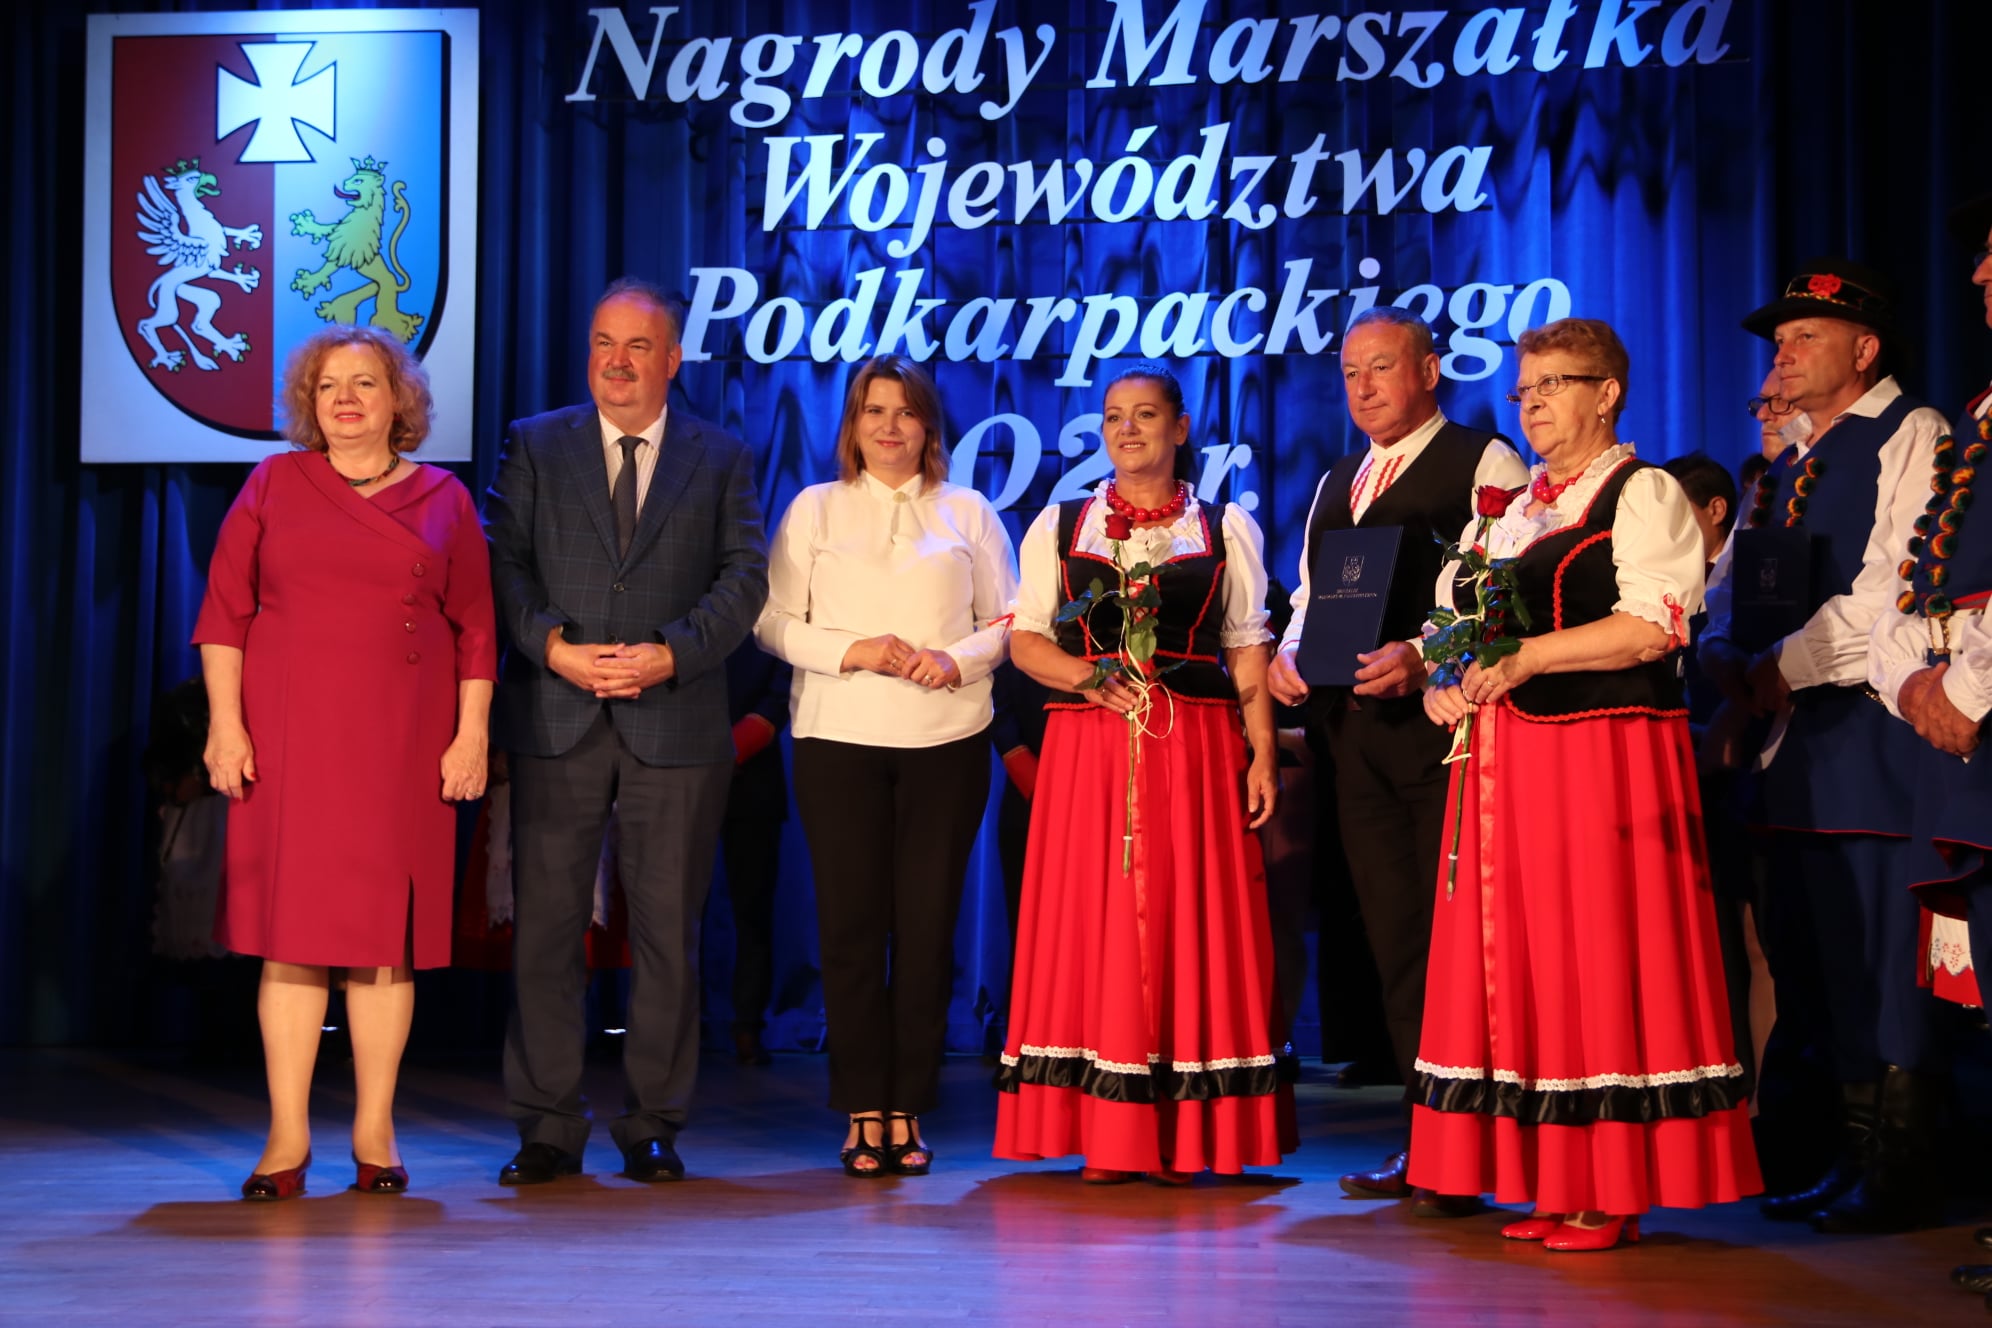 Nagrody Marszałka województwa